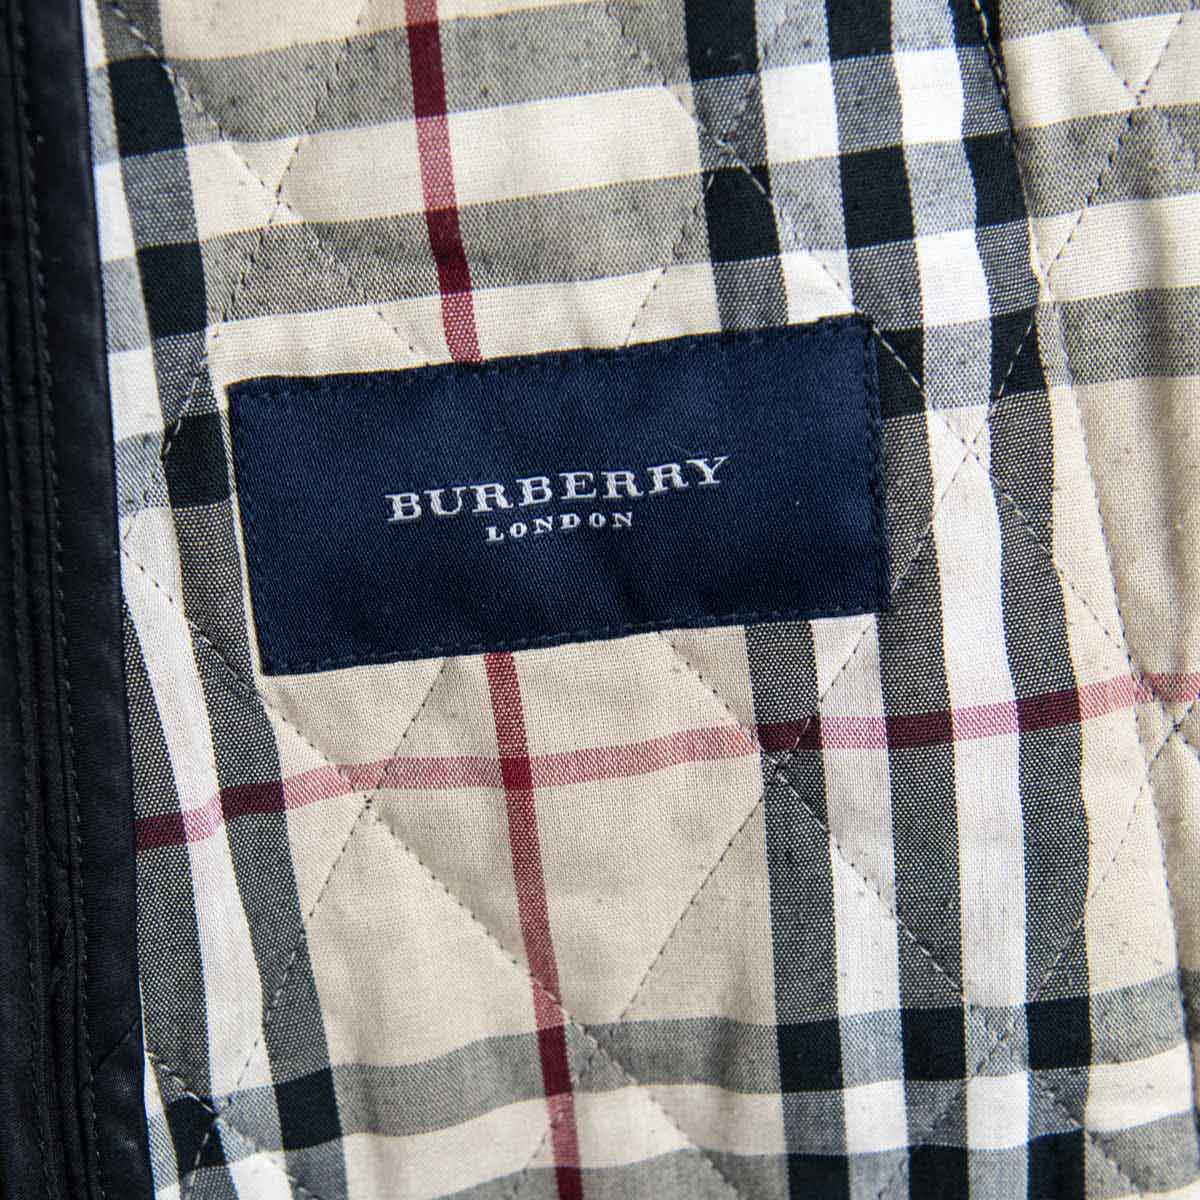 burberry london jacket